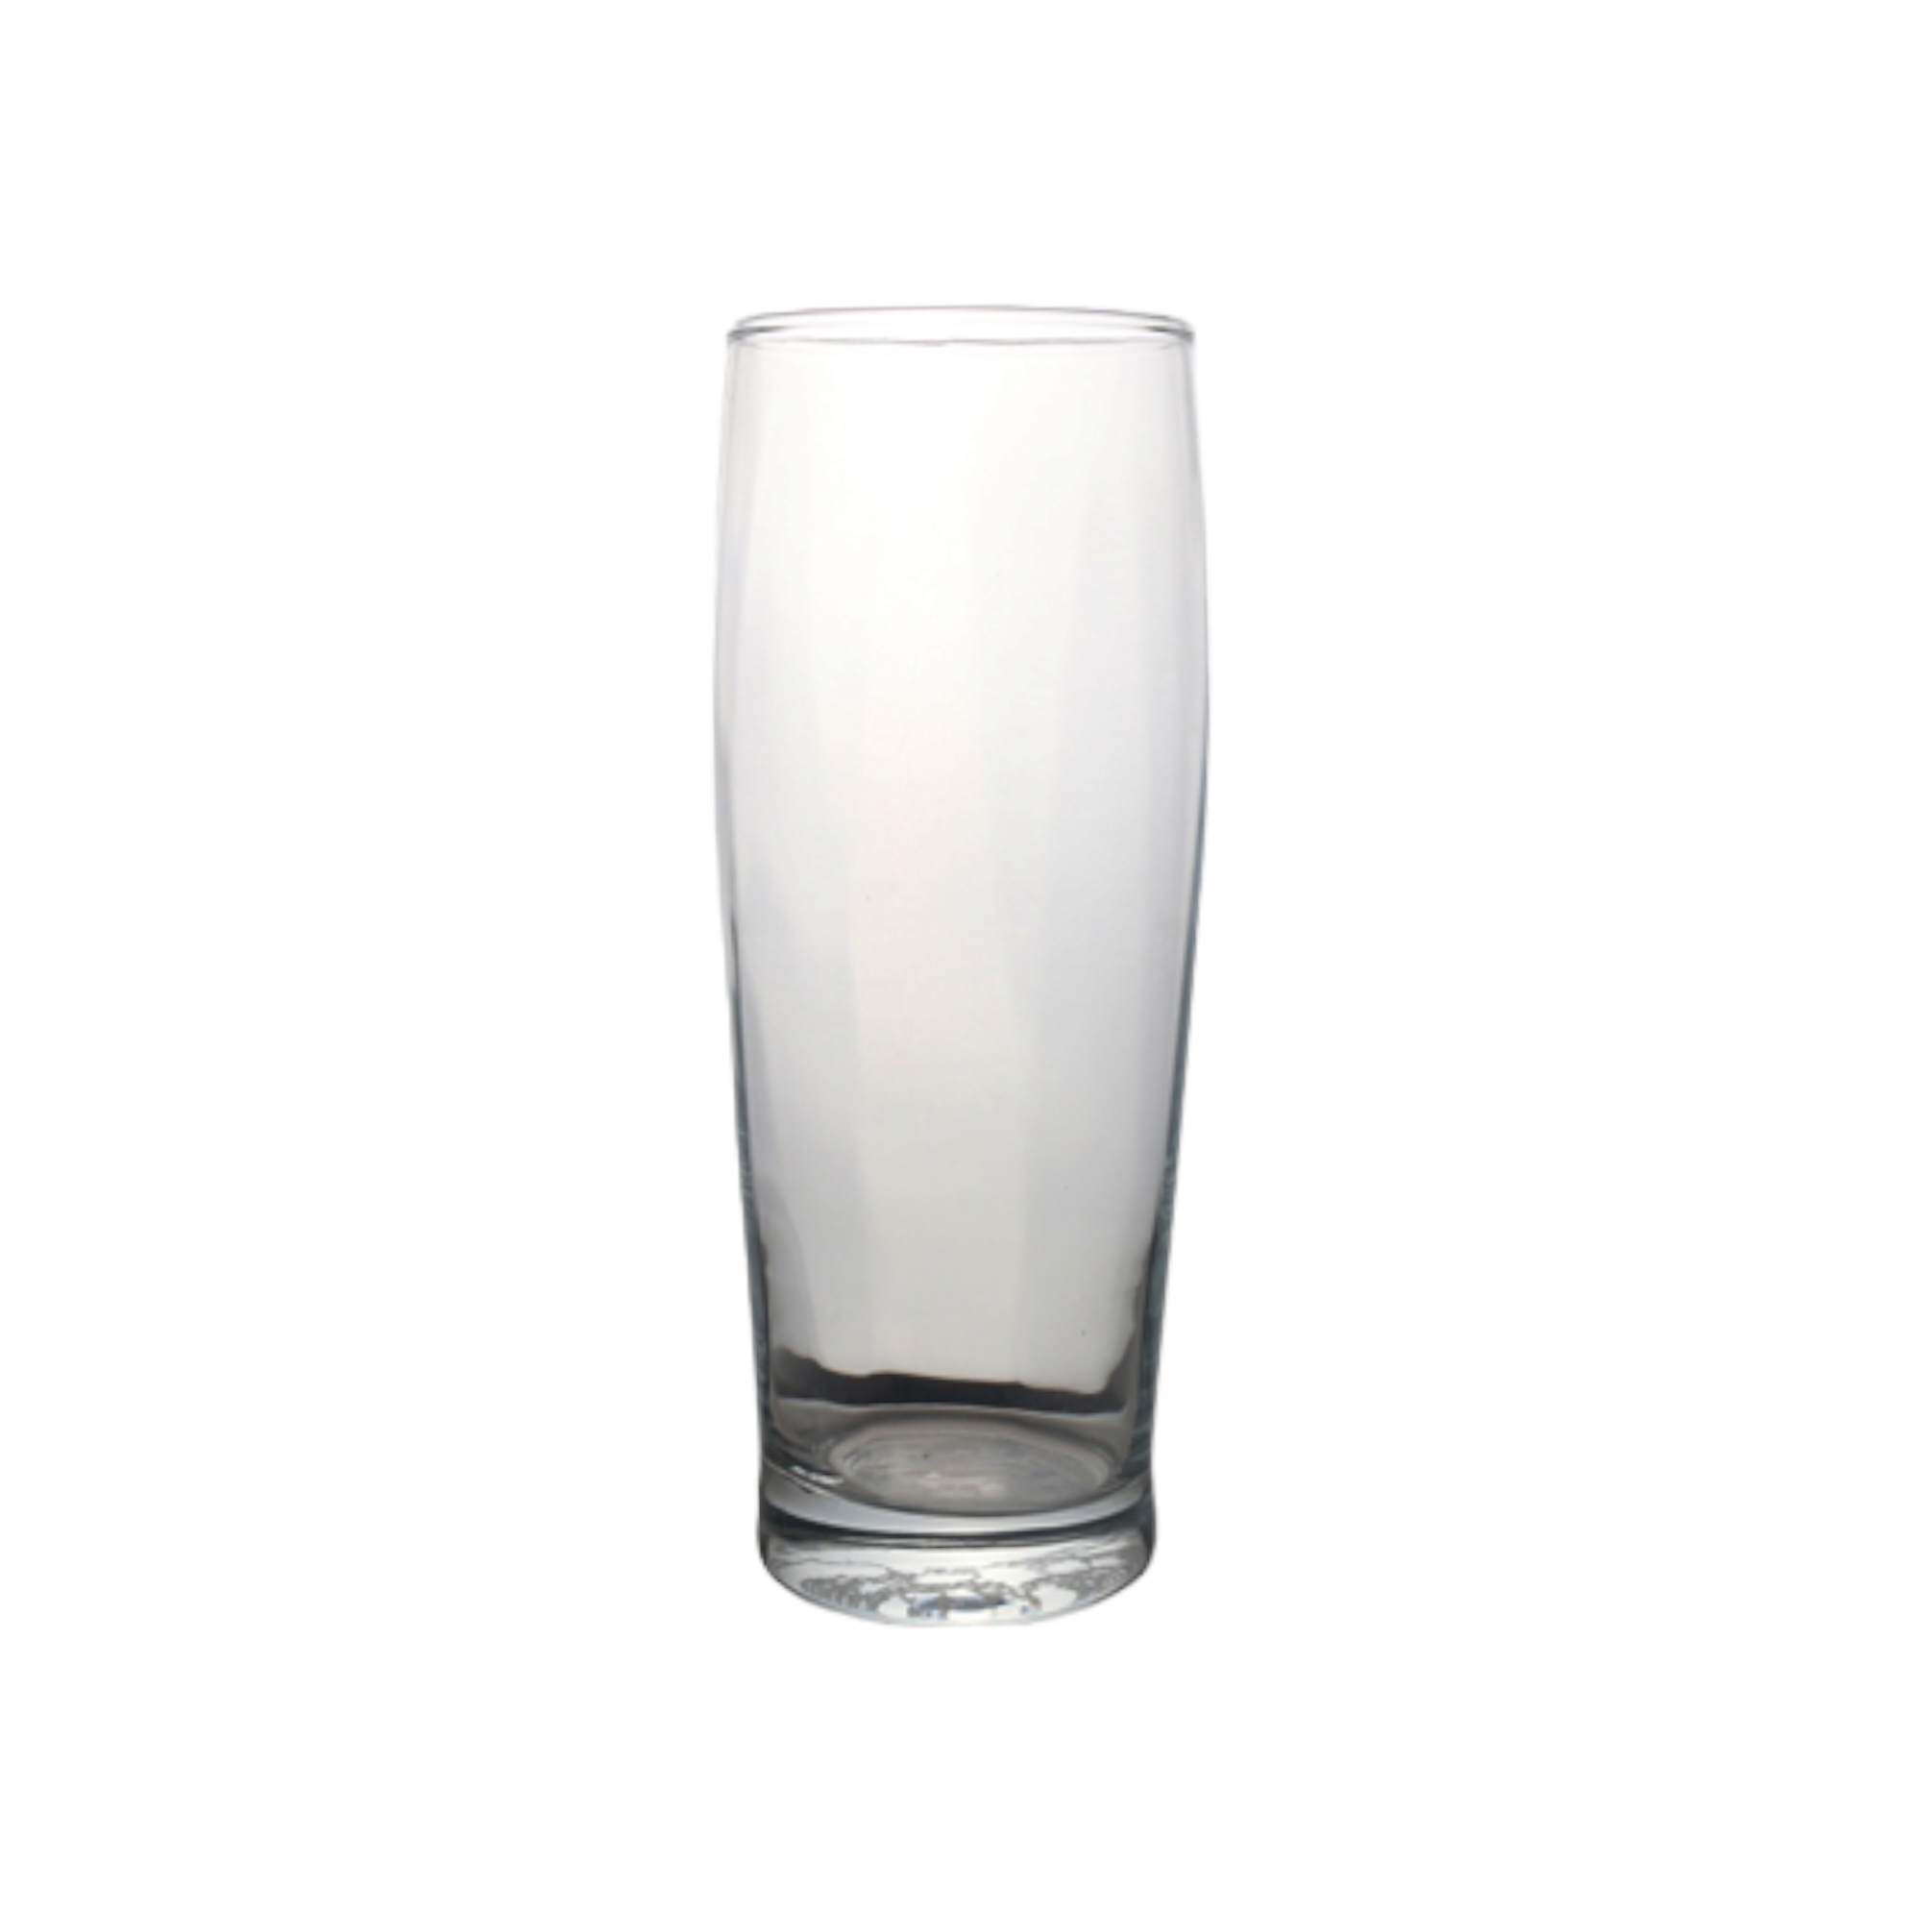 Pasabahce Glass Tumbler 600ml Beer Mug 40295